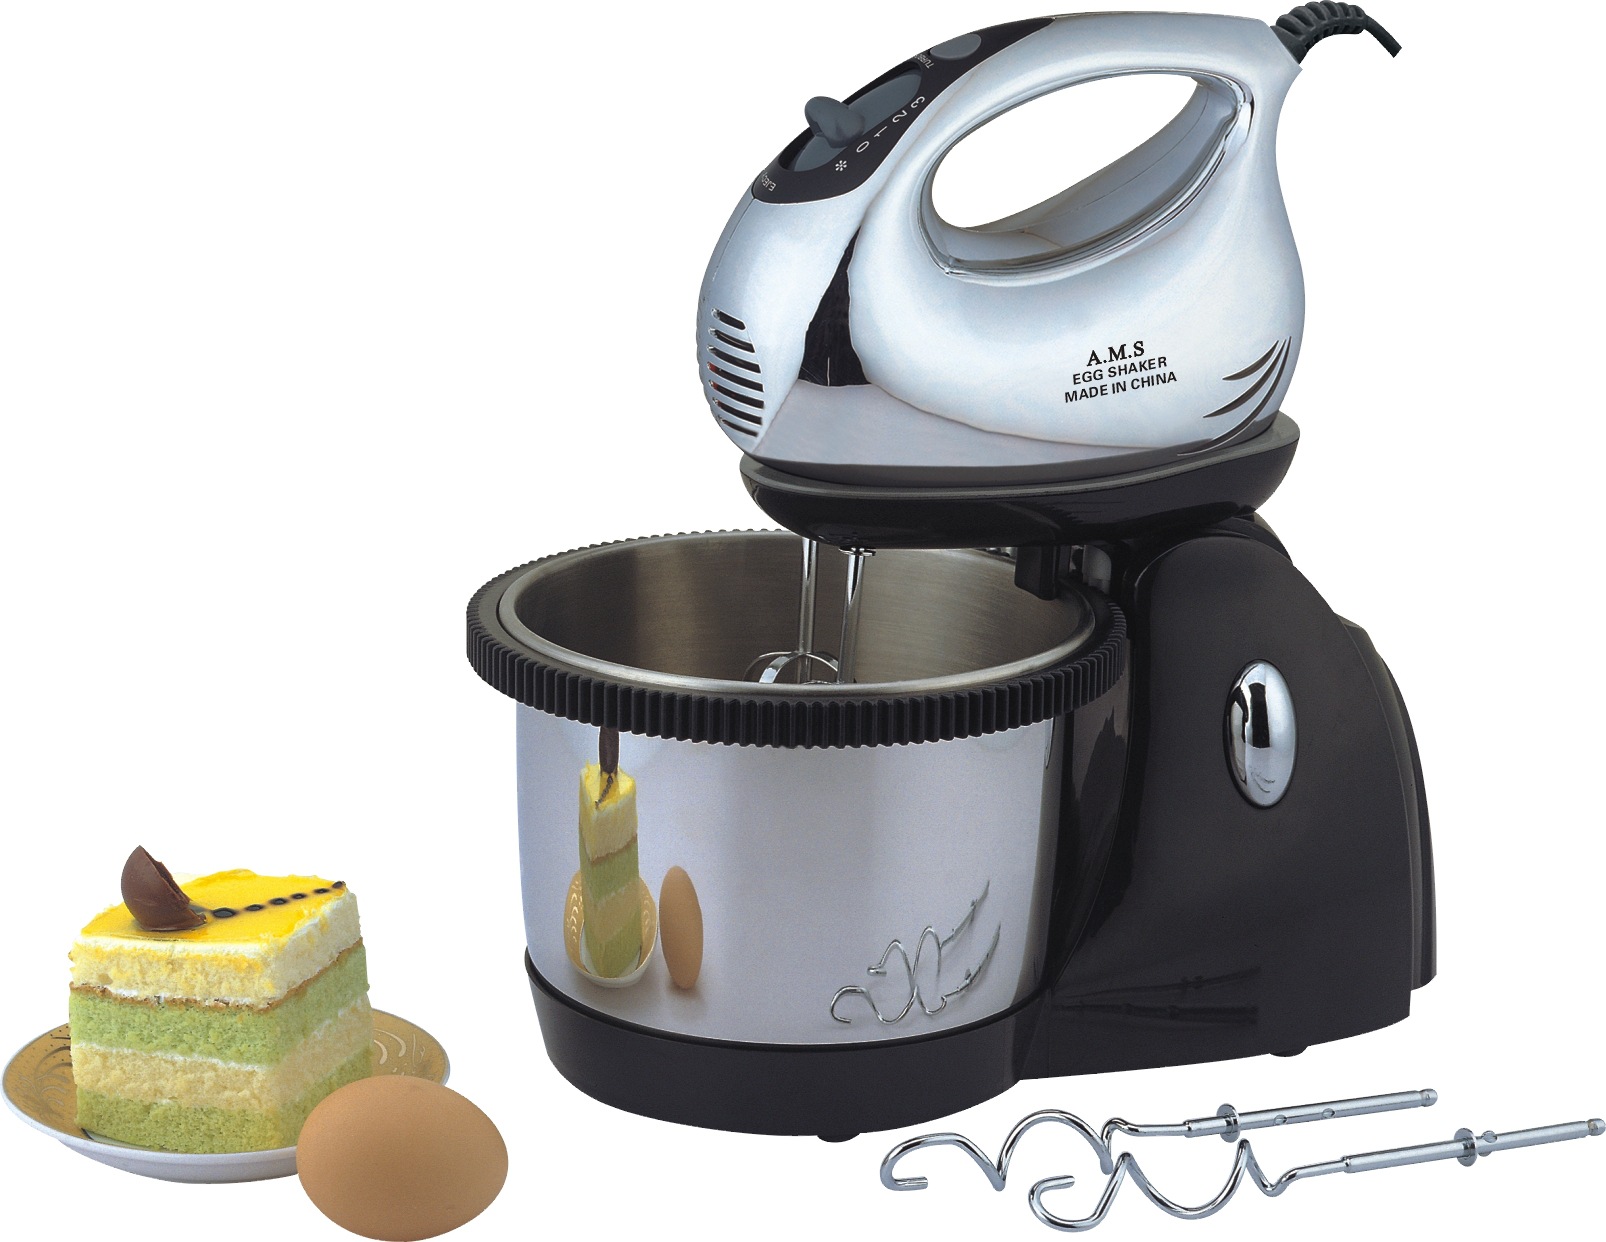 打蛋器-厨房家用打蛋器--阿里巴巴采购平台求购